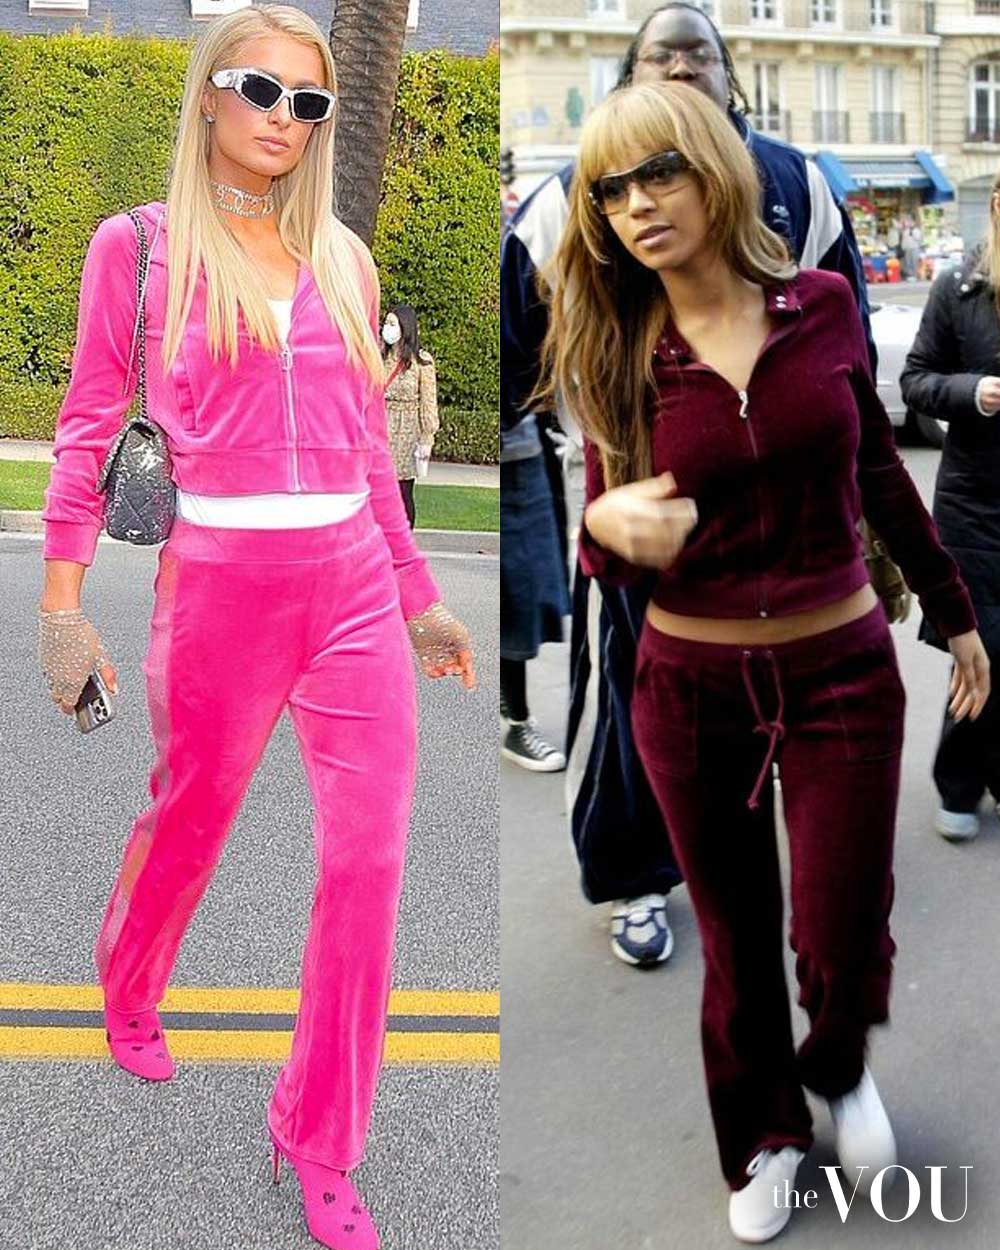 crop zip-up hoodie, straight leg pants, sneakers or high heels - Beyonce and Paris Hilton